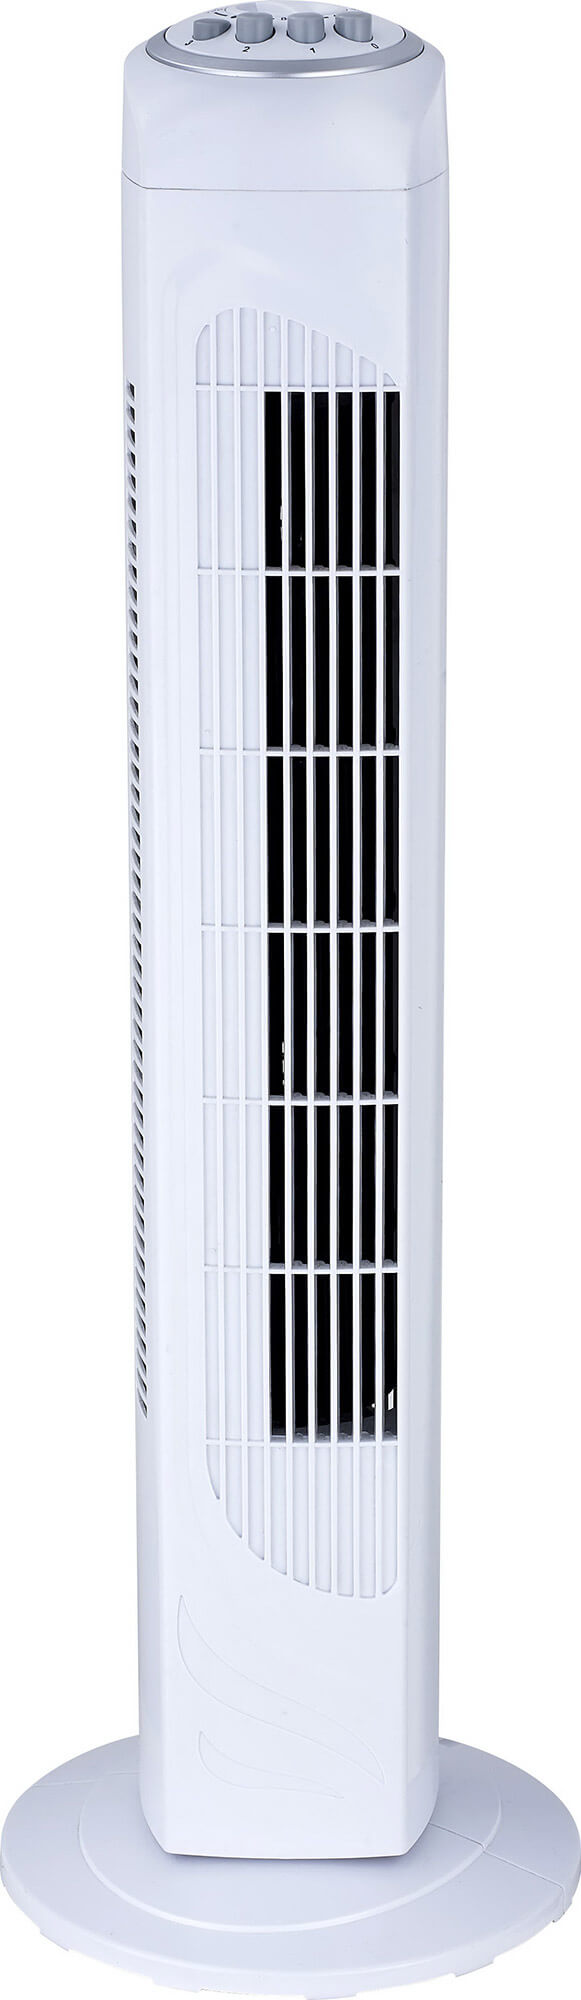 Ventilatore a Colonna Oscillante in ABS 50W 3 Velocità Bauer Bianco online